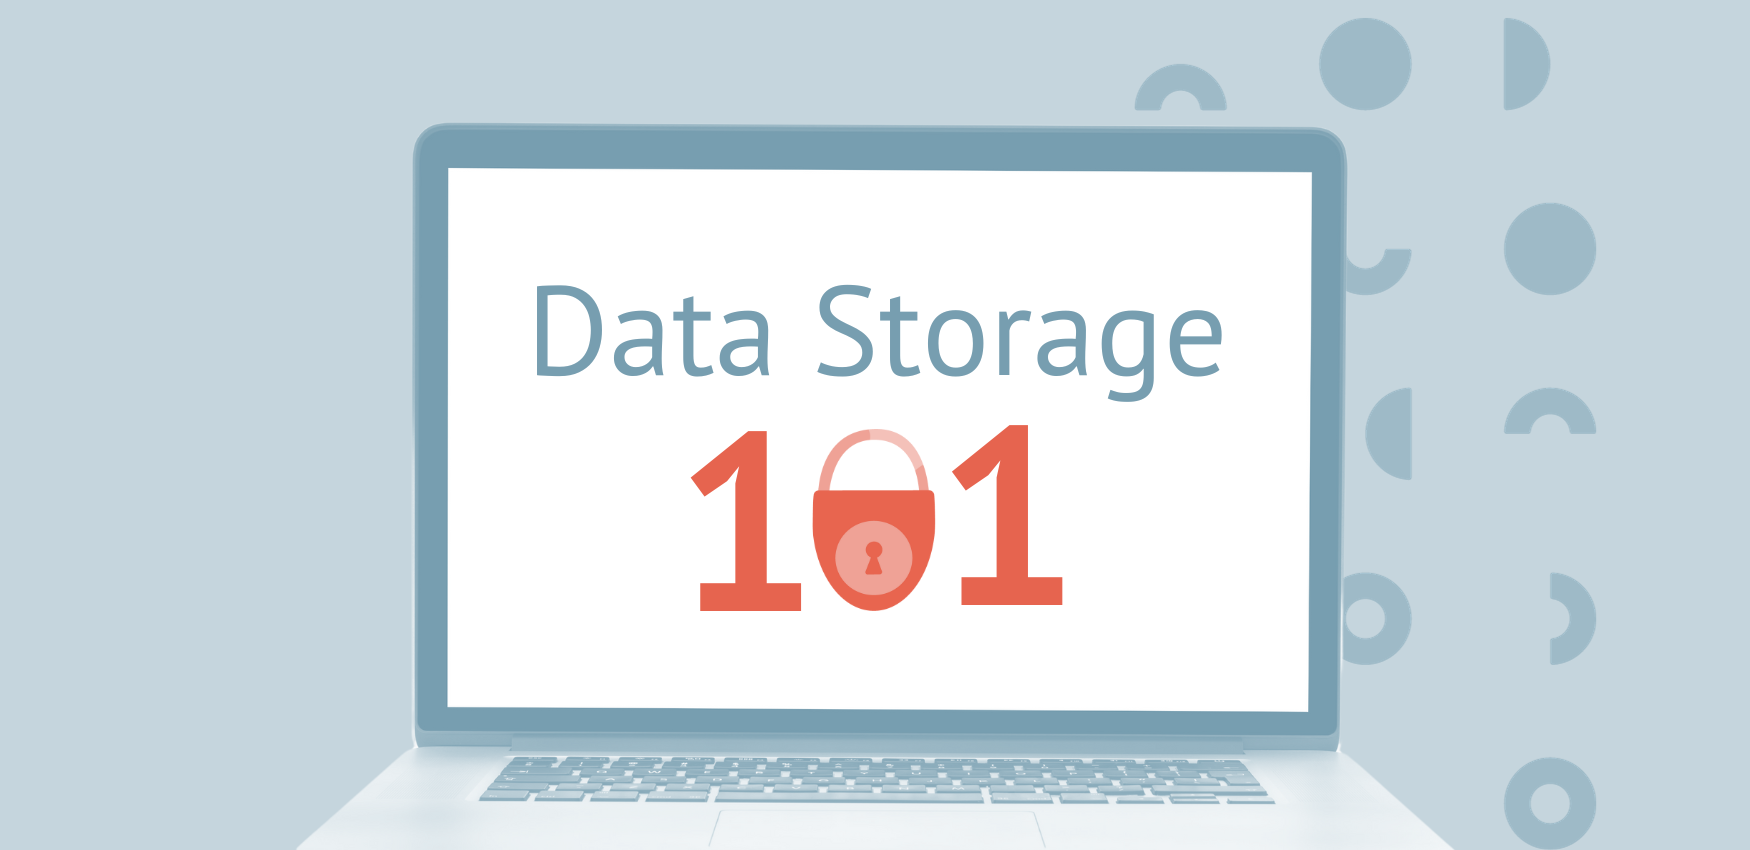 Data Storage 101